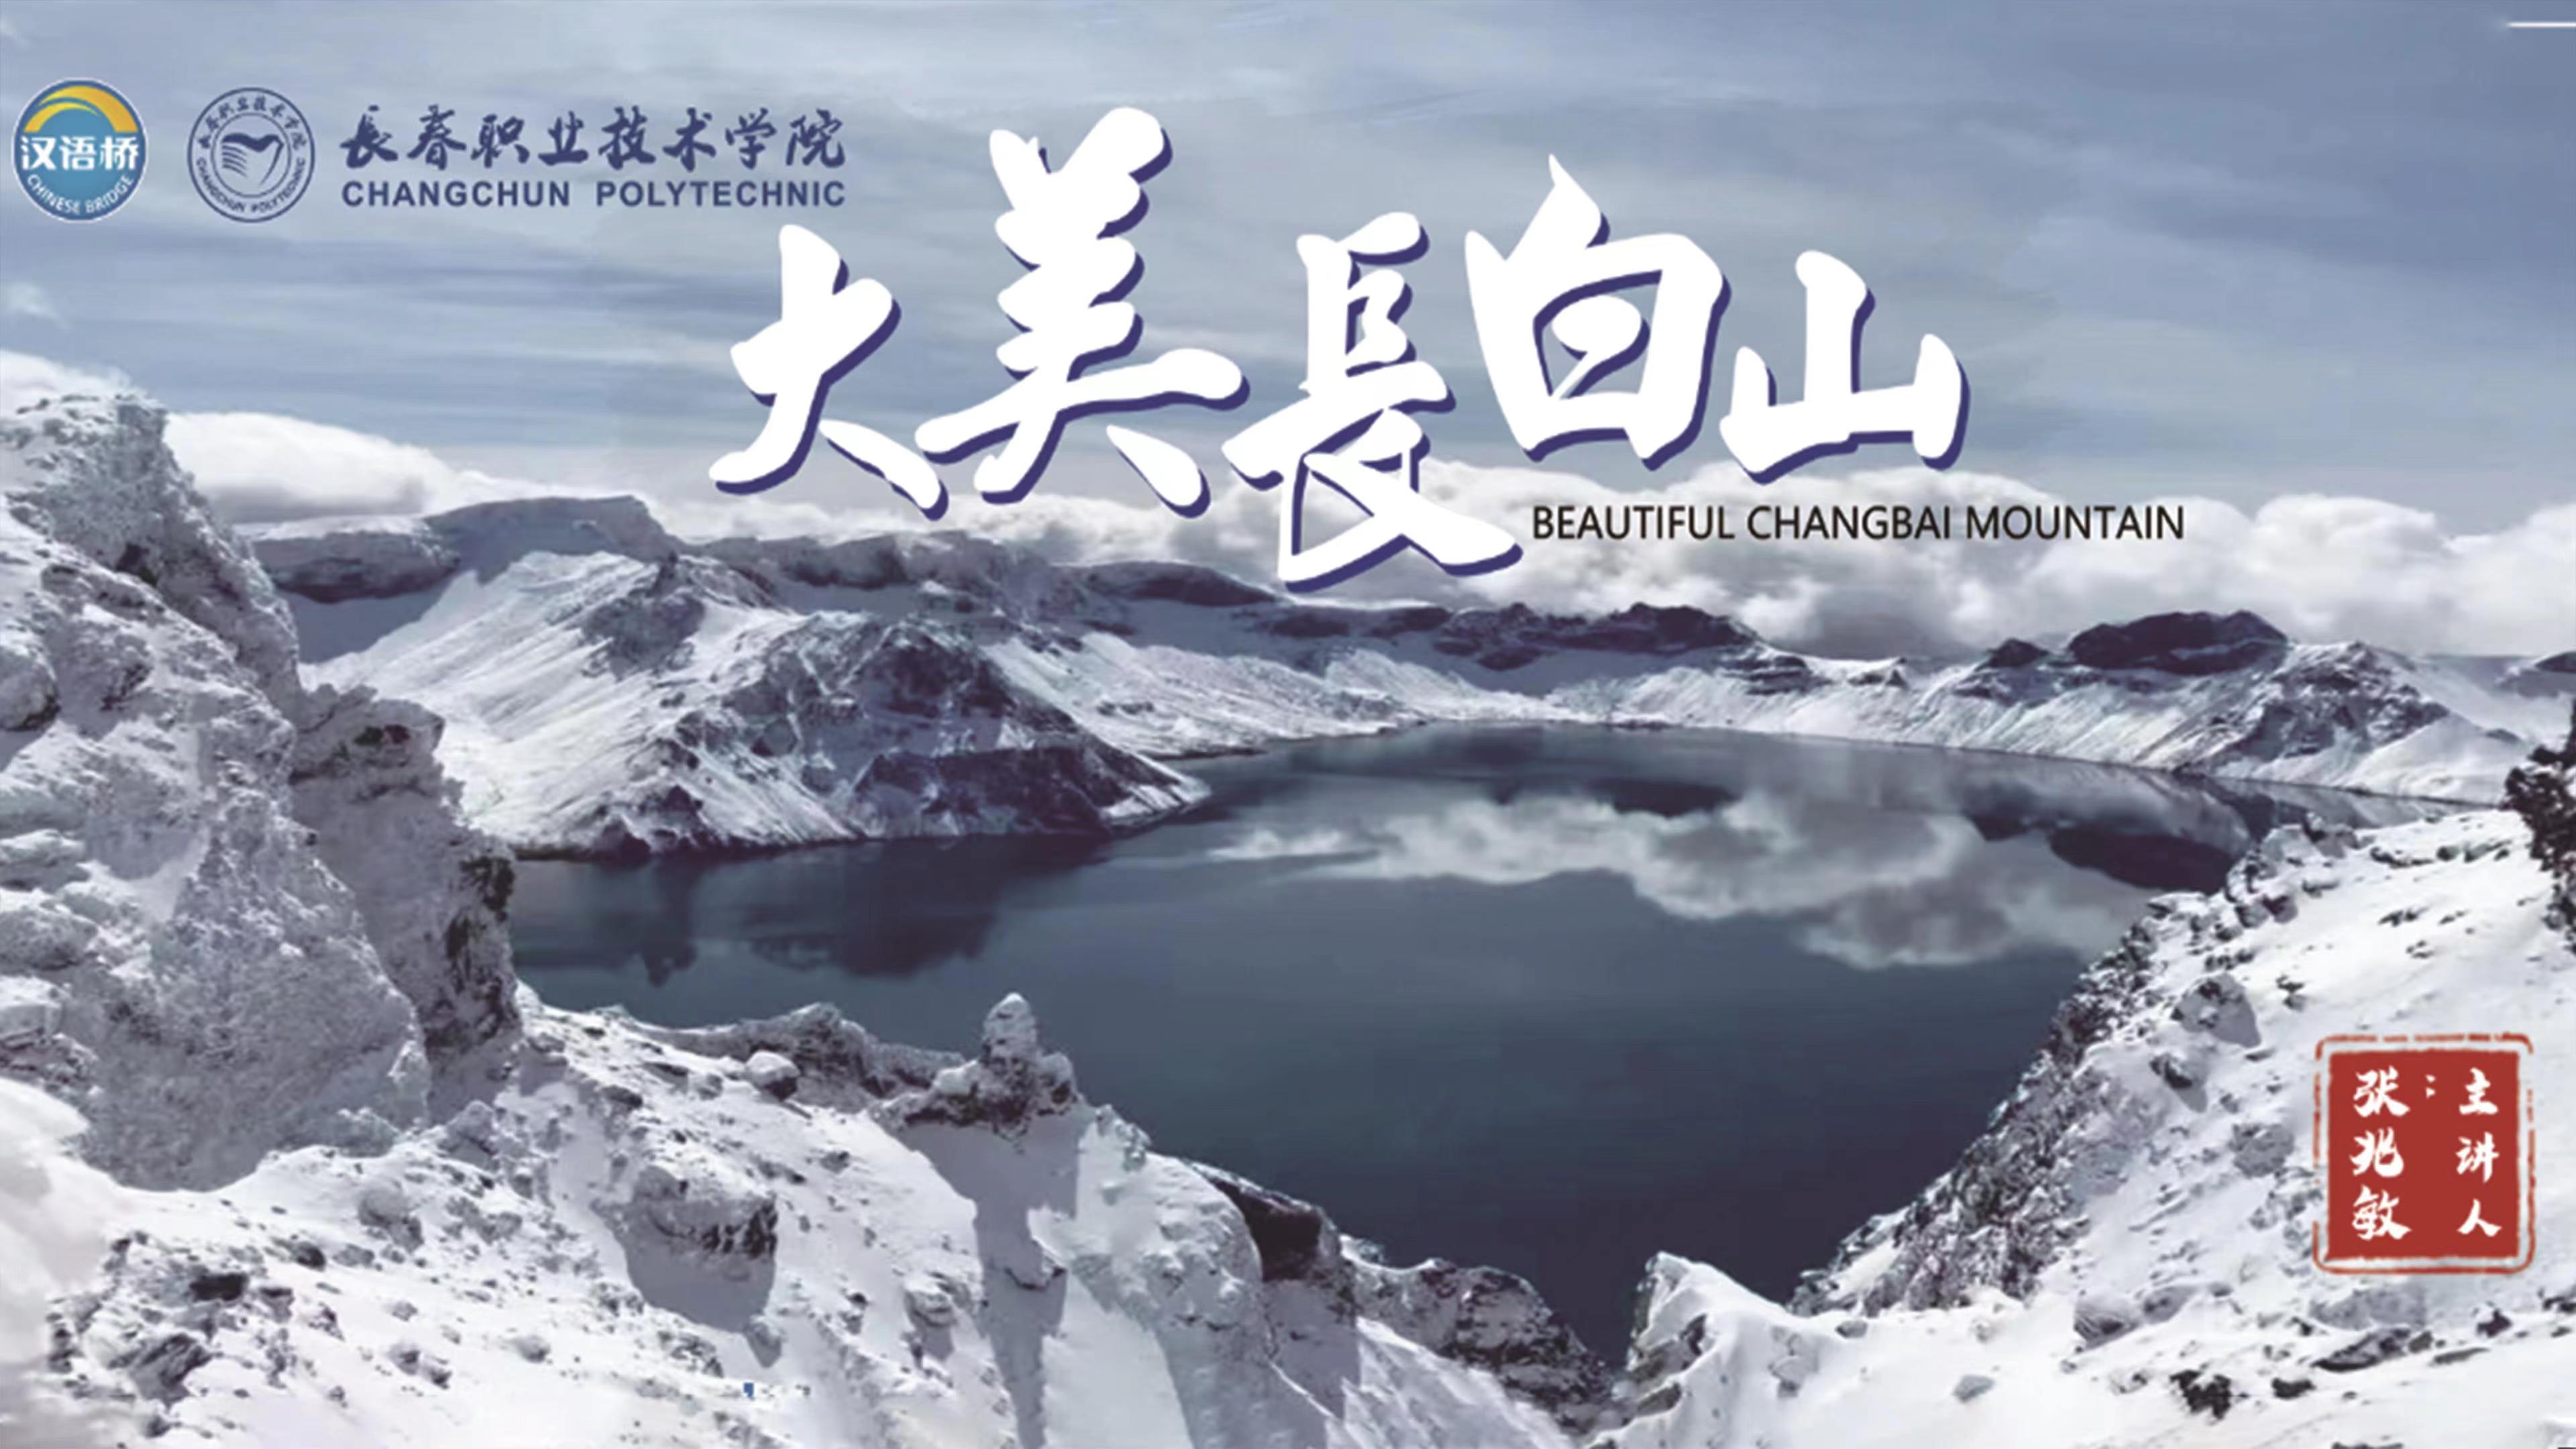 Beautiful Changbai Mountain